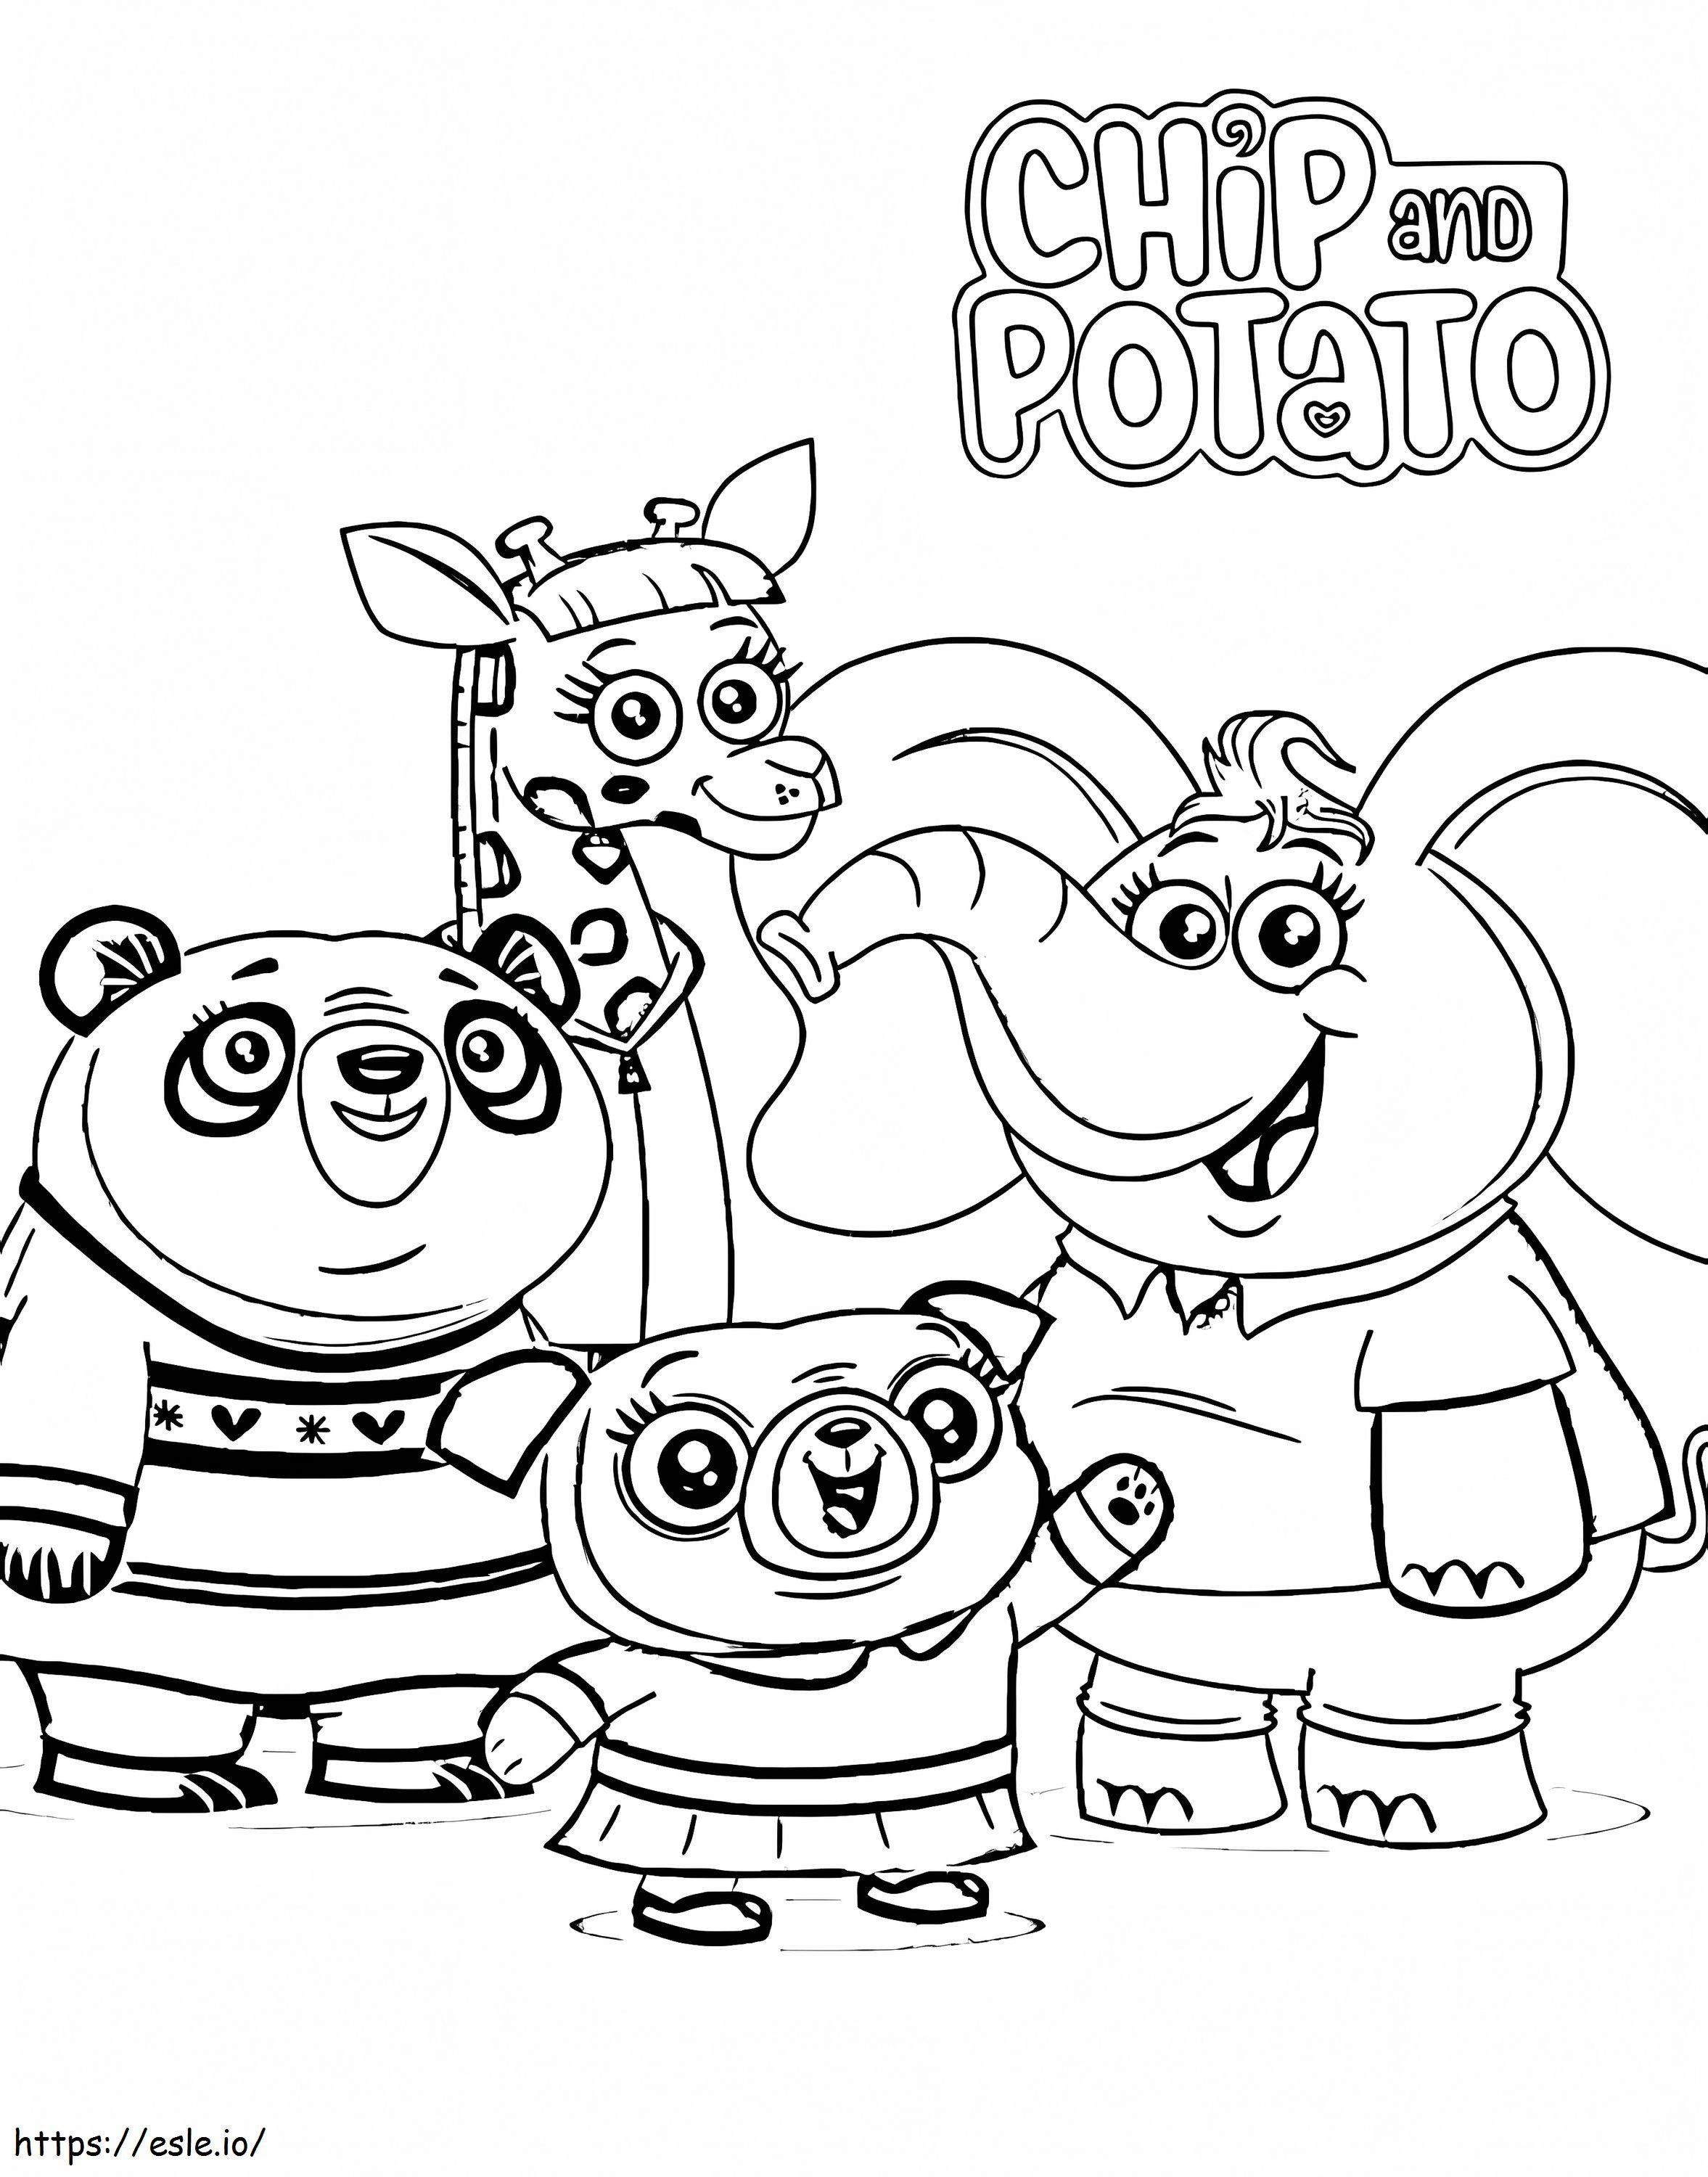 Charaktere aus Chip und Kartoffel ausmalbilder